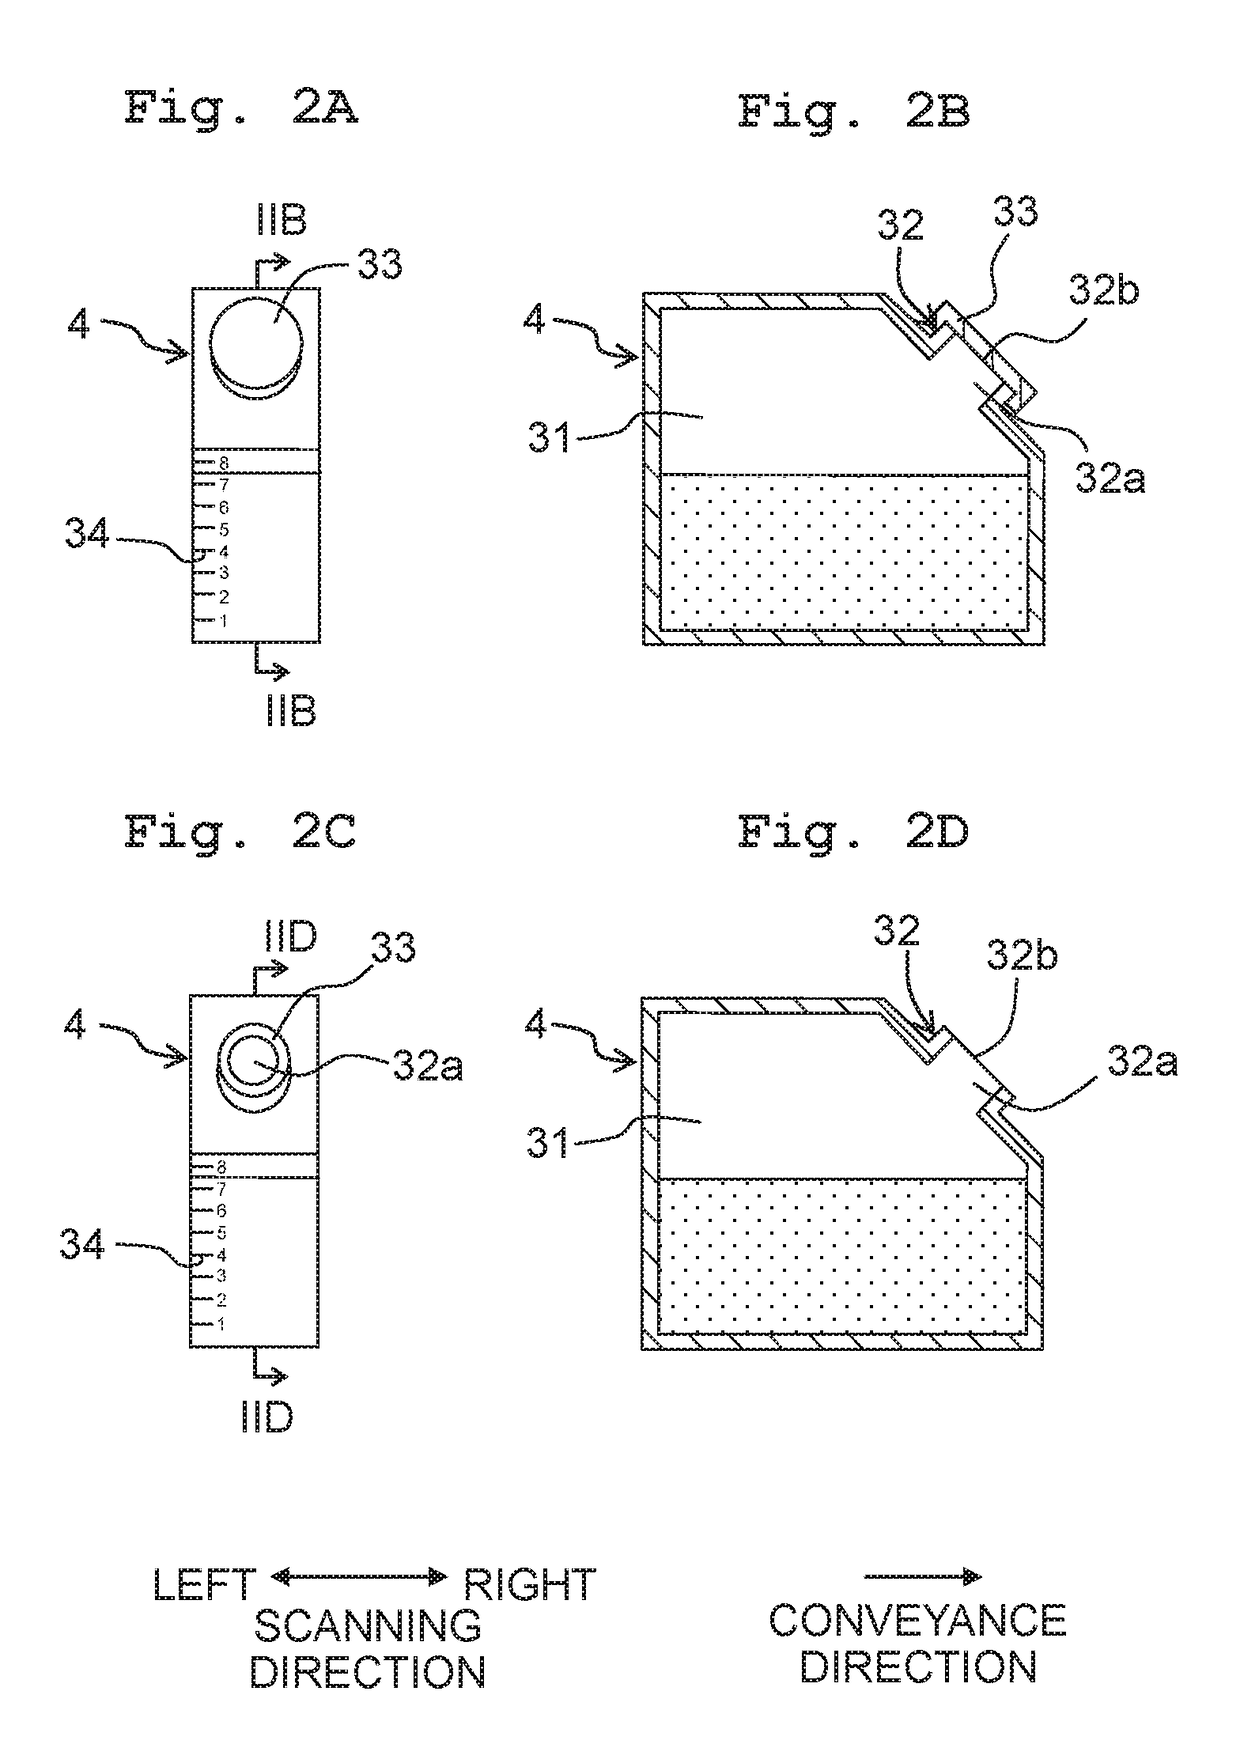 Liquid discharging apparatus